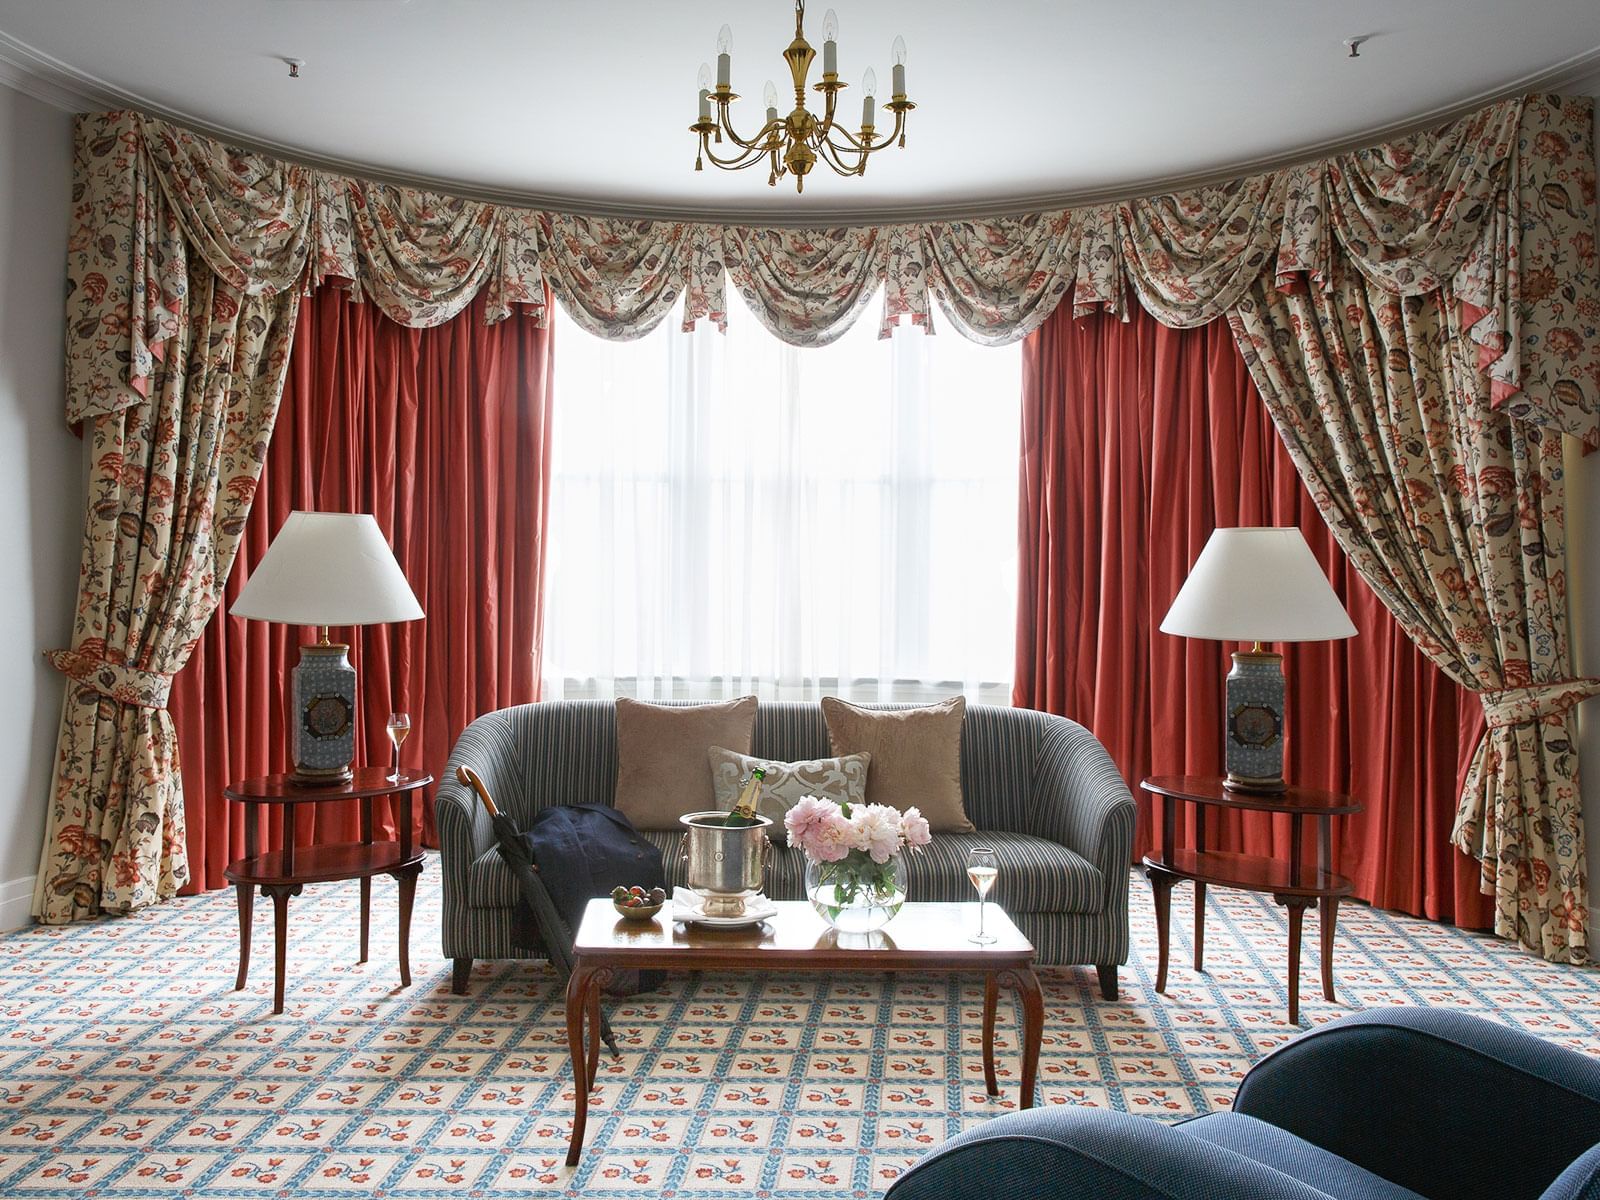 Windsor Suite Living Room at The Hotel Windsor Melbourne